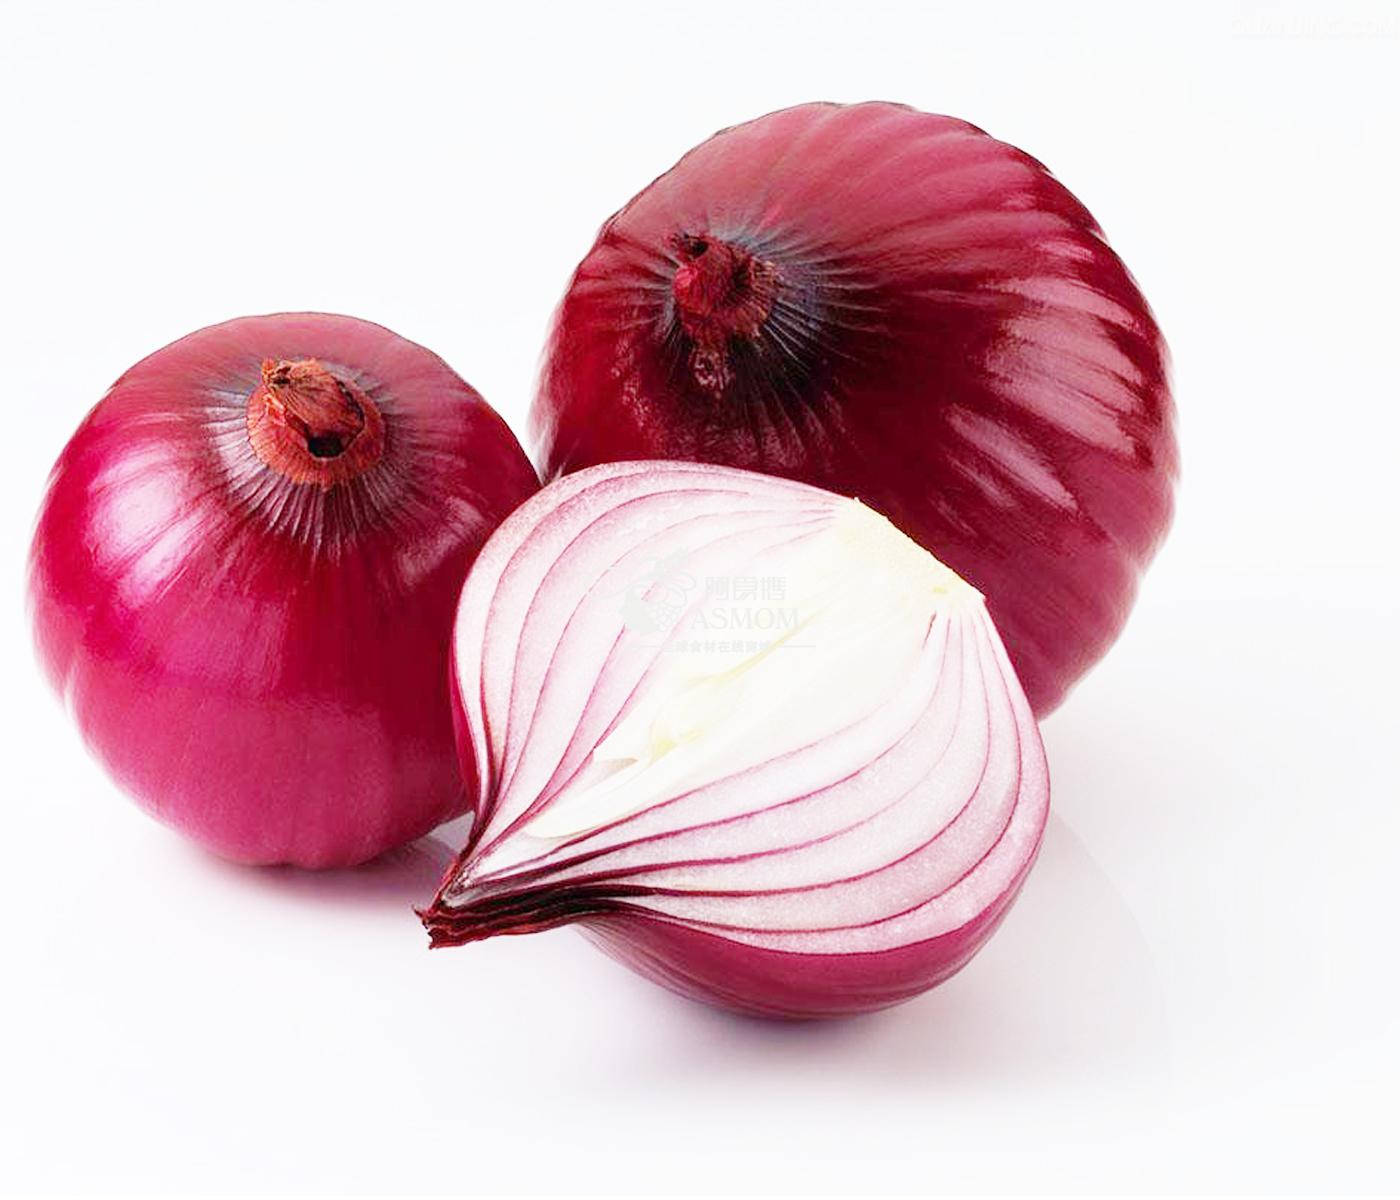 Minimalisthalf Cut Red Onions: Minimalistisk Halva Skuren Röd Lök. Wallpaper